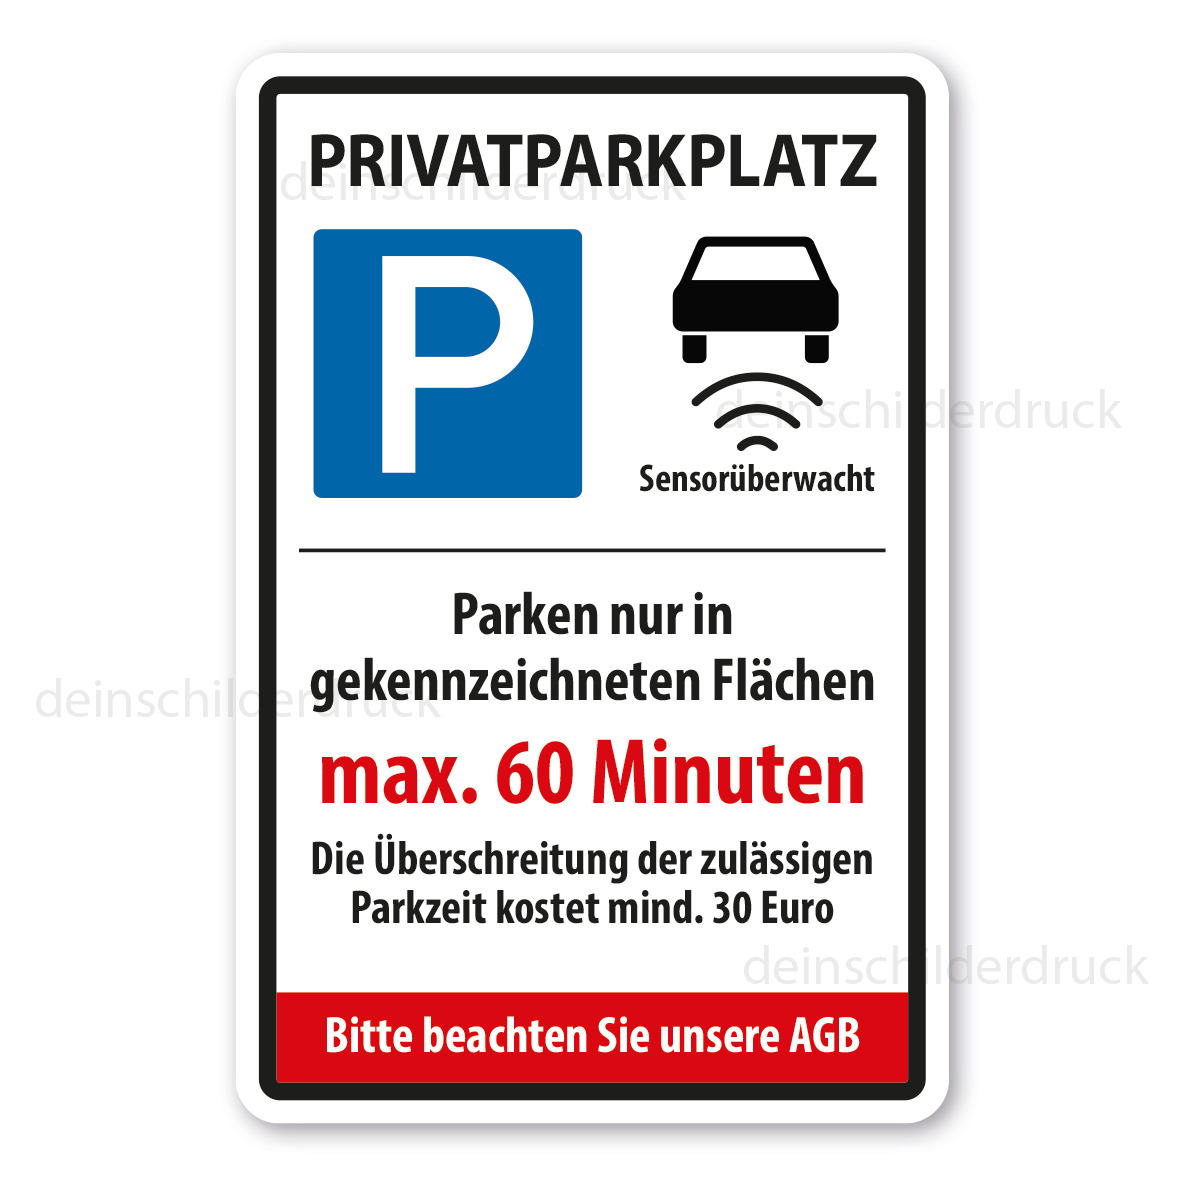 https://www.deinschilderdruck.de/media/image/5a/df/e7/VZ-K-133-Privatparkplatz-Sensoruberwacht-Parken-nur-in-gekennzeichnetten-Flachen-400-x-600-mm.png